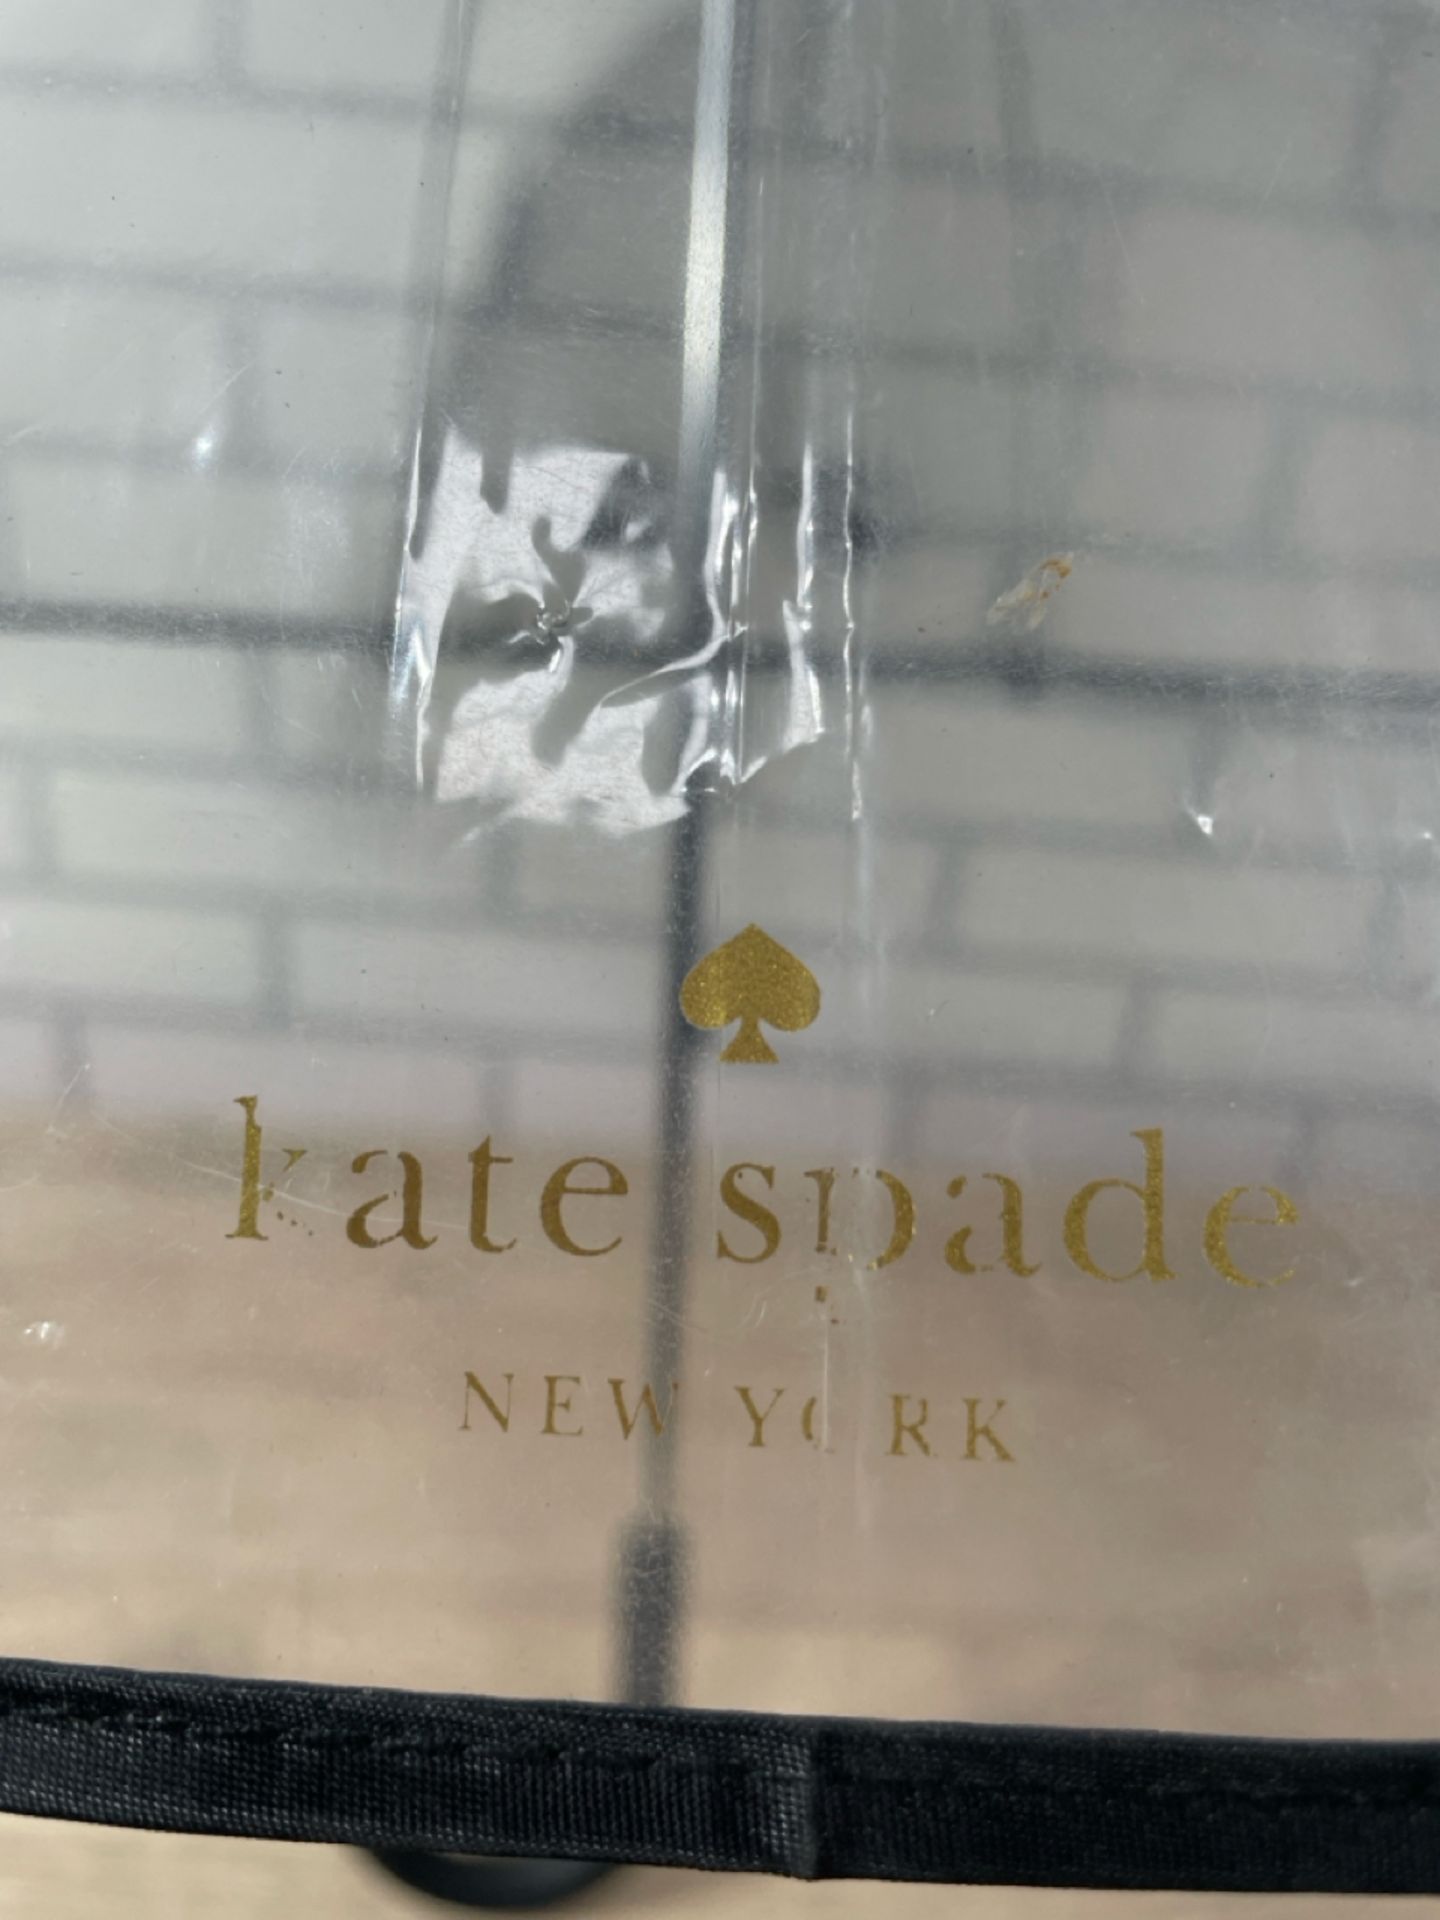 Kate Spade Winking Eye Umbrella - Image 2 of 3